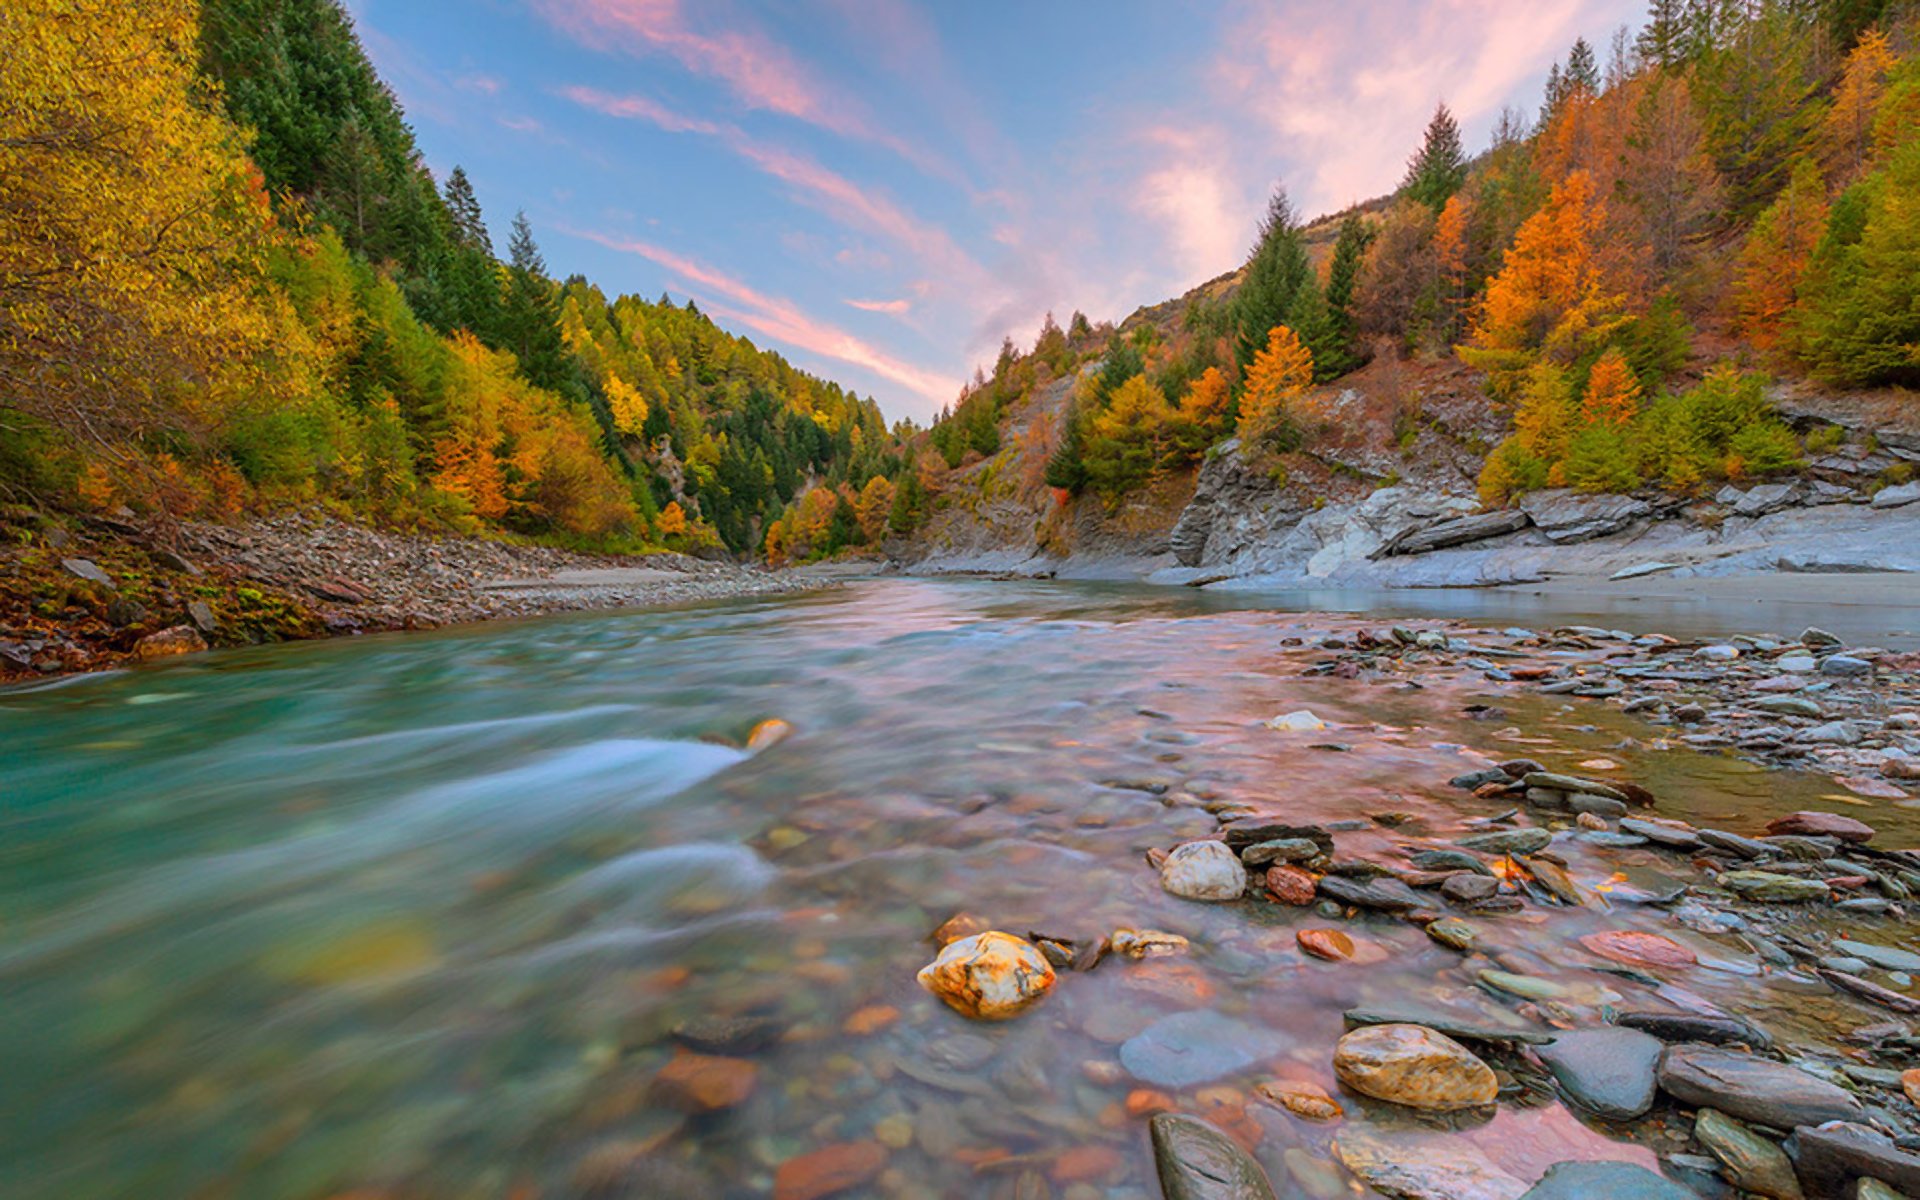 Stream In The Autumn Mountains Fondo De Pantalla Hd Fondo De